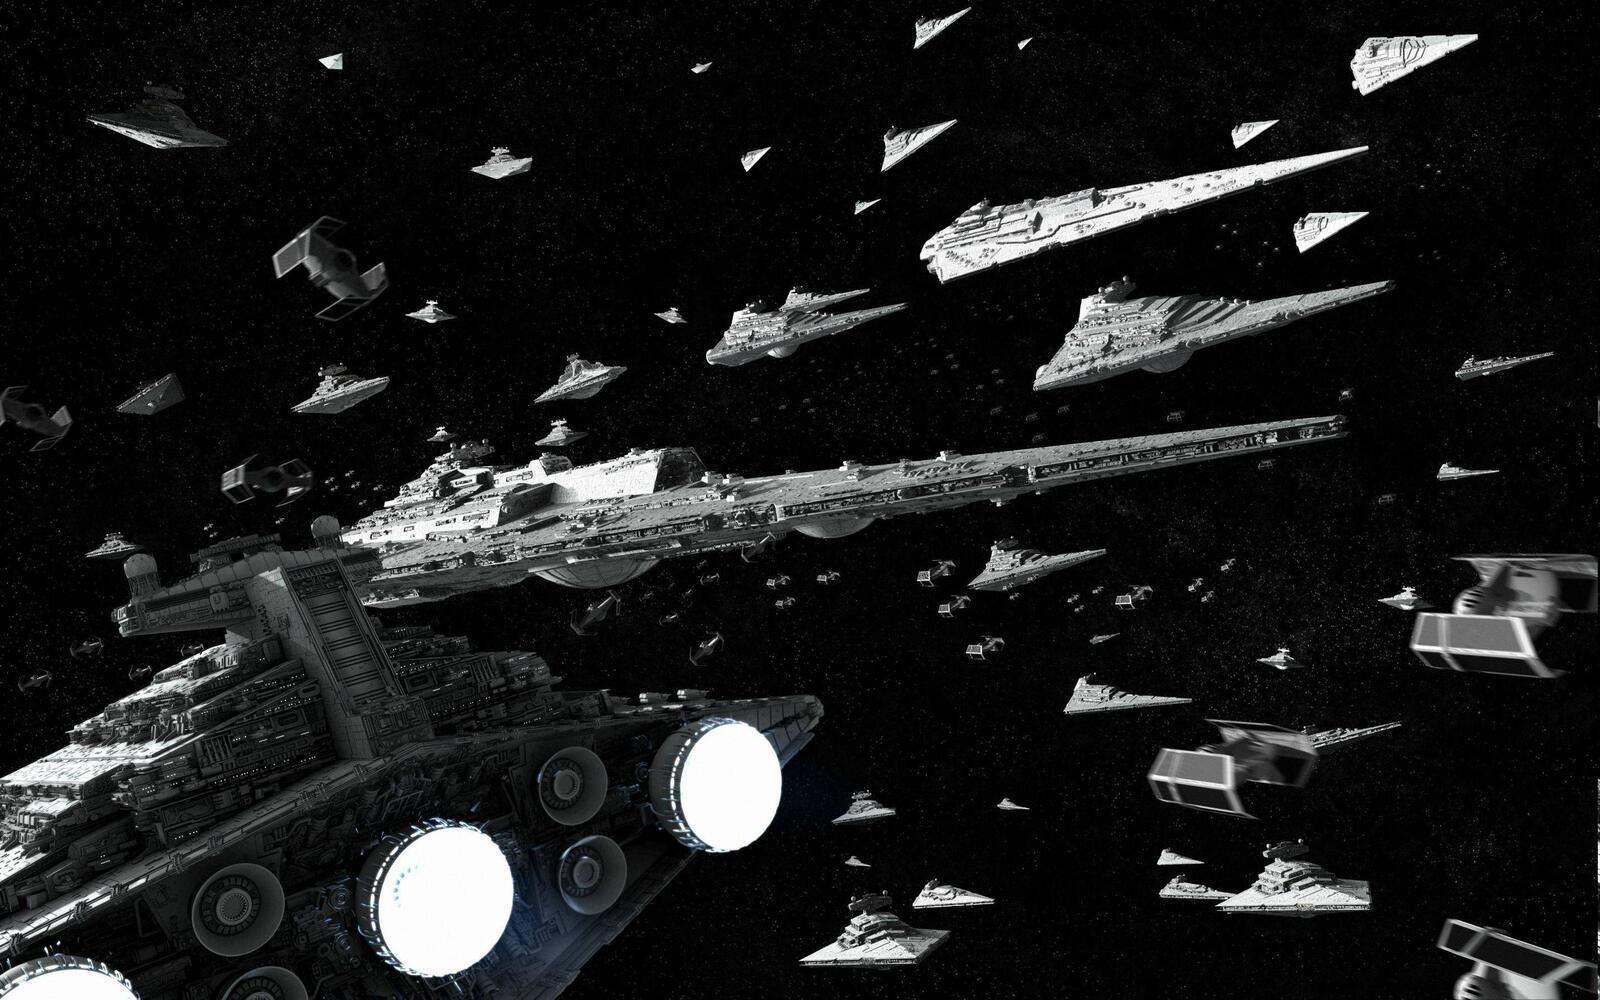 Бесплатное фото Космические корабли из звездных войн